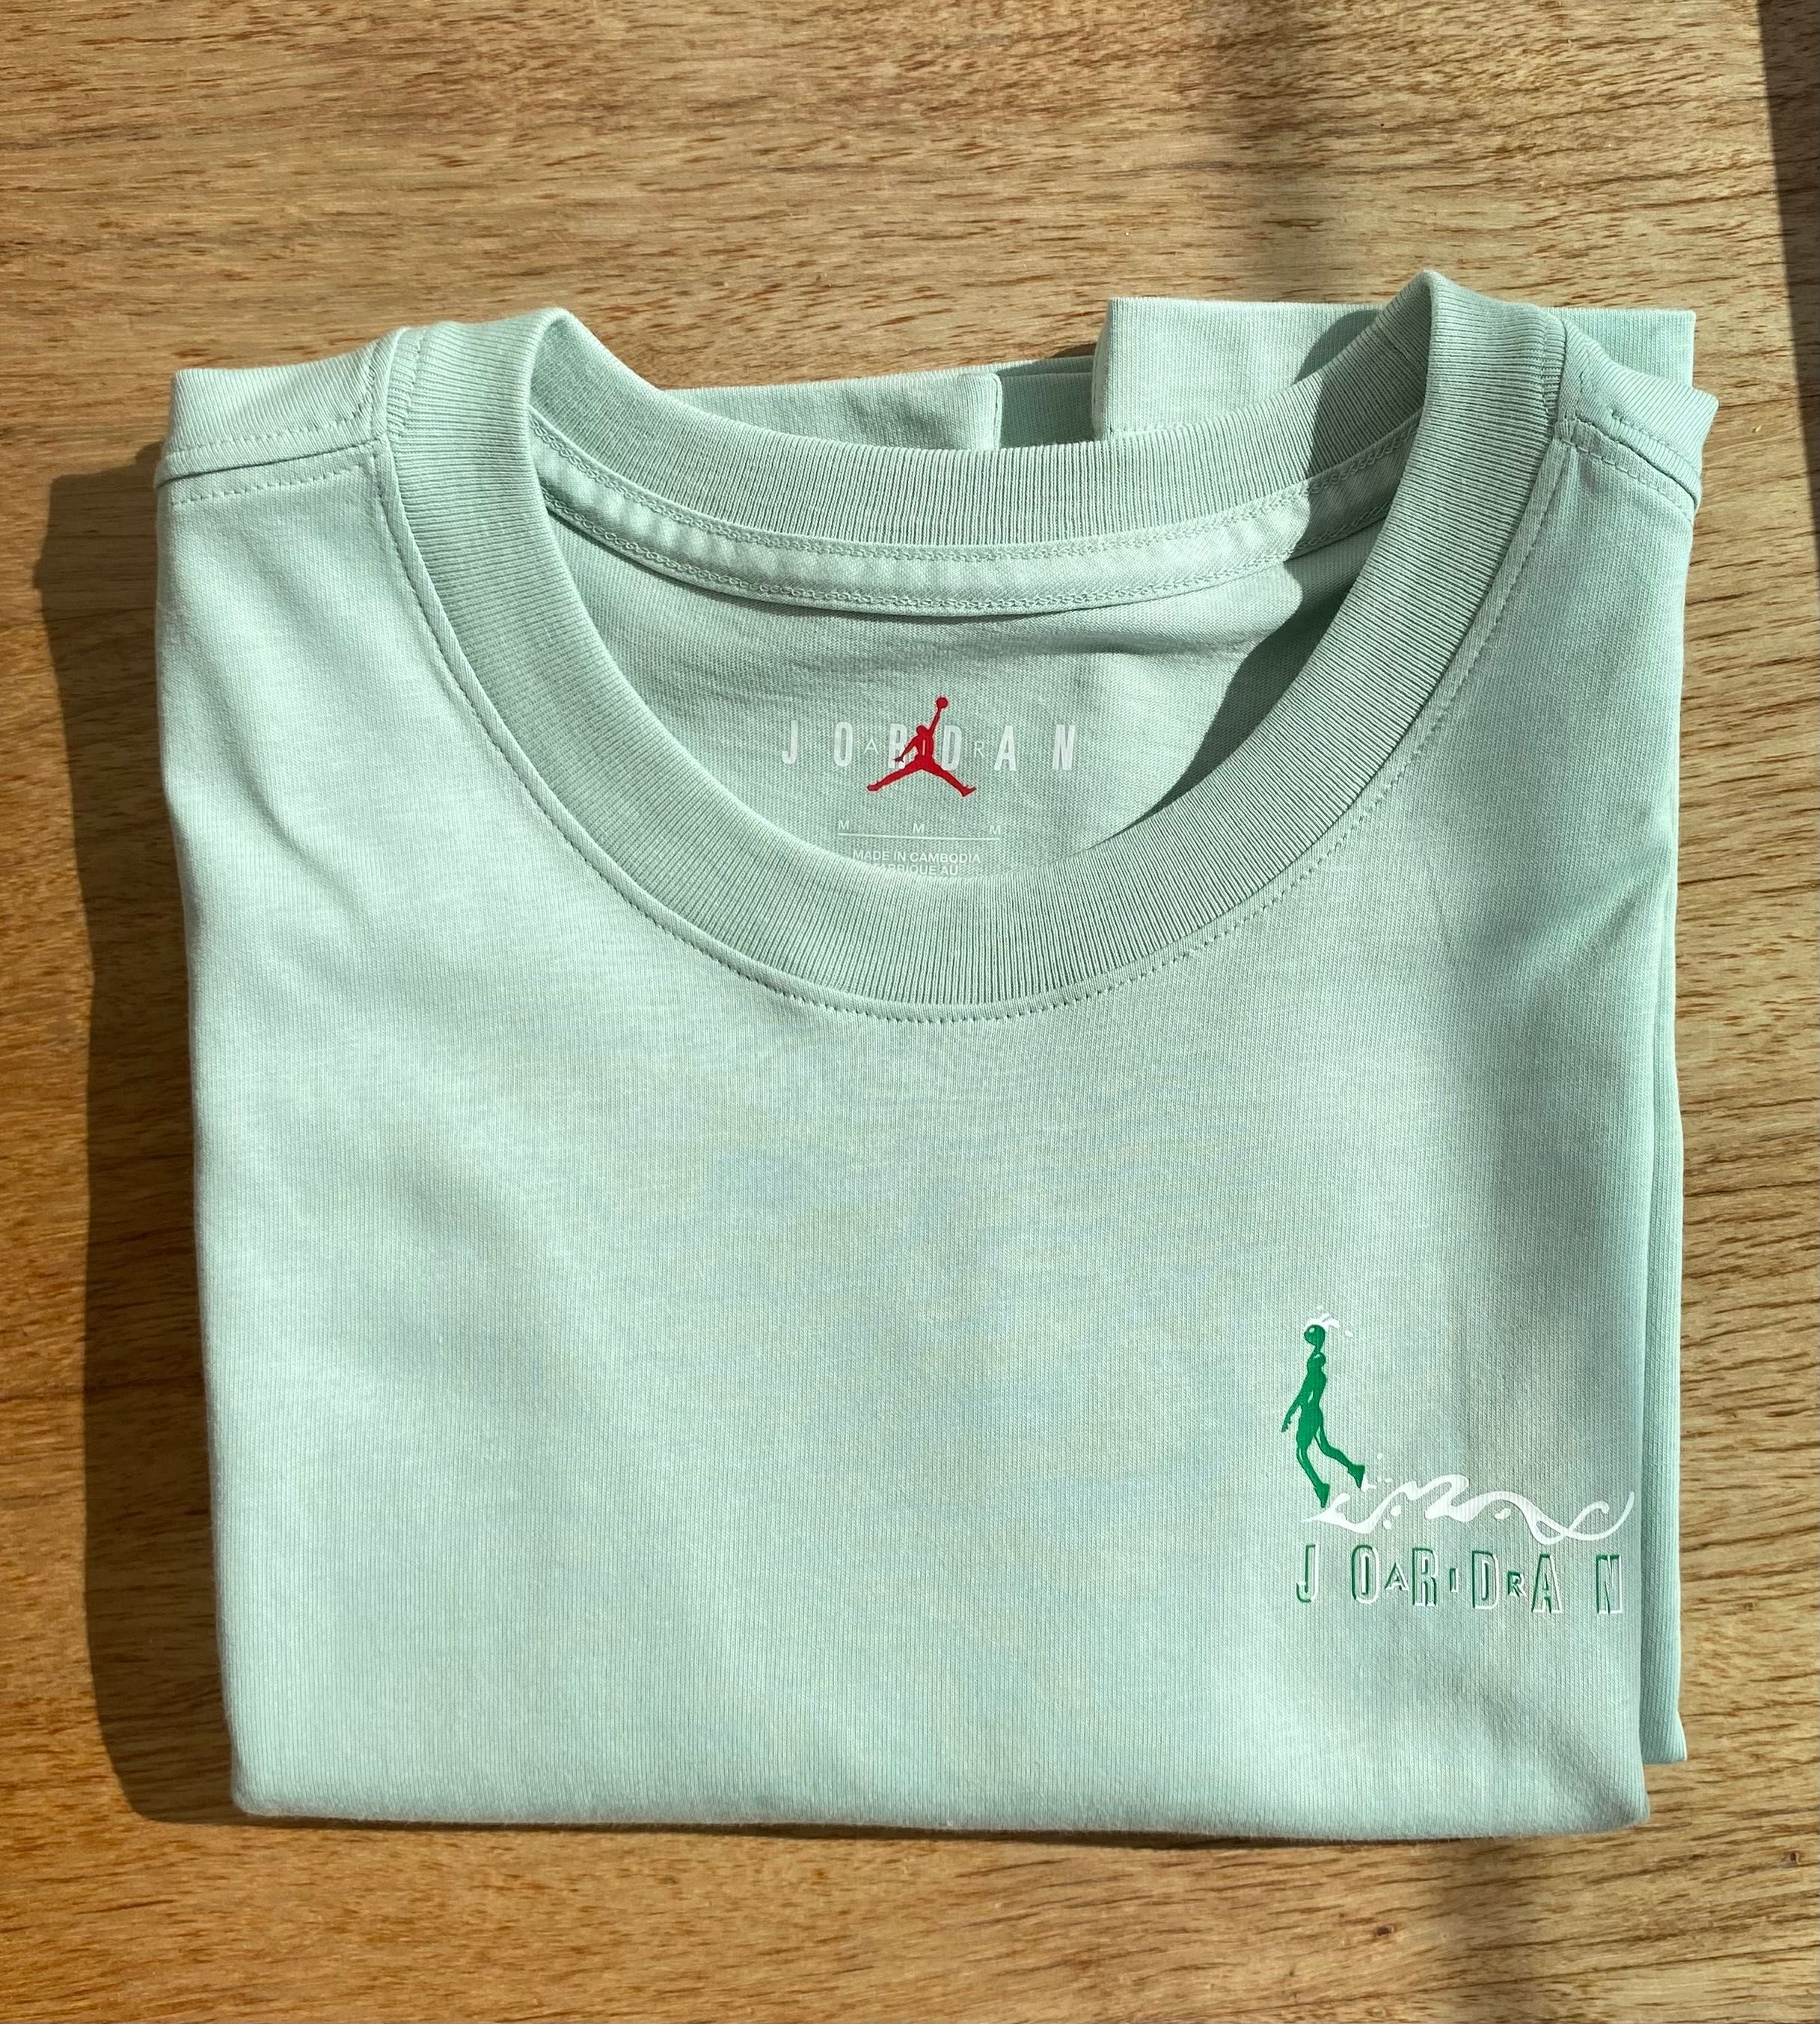 T shirt Air jordan Nova